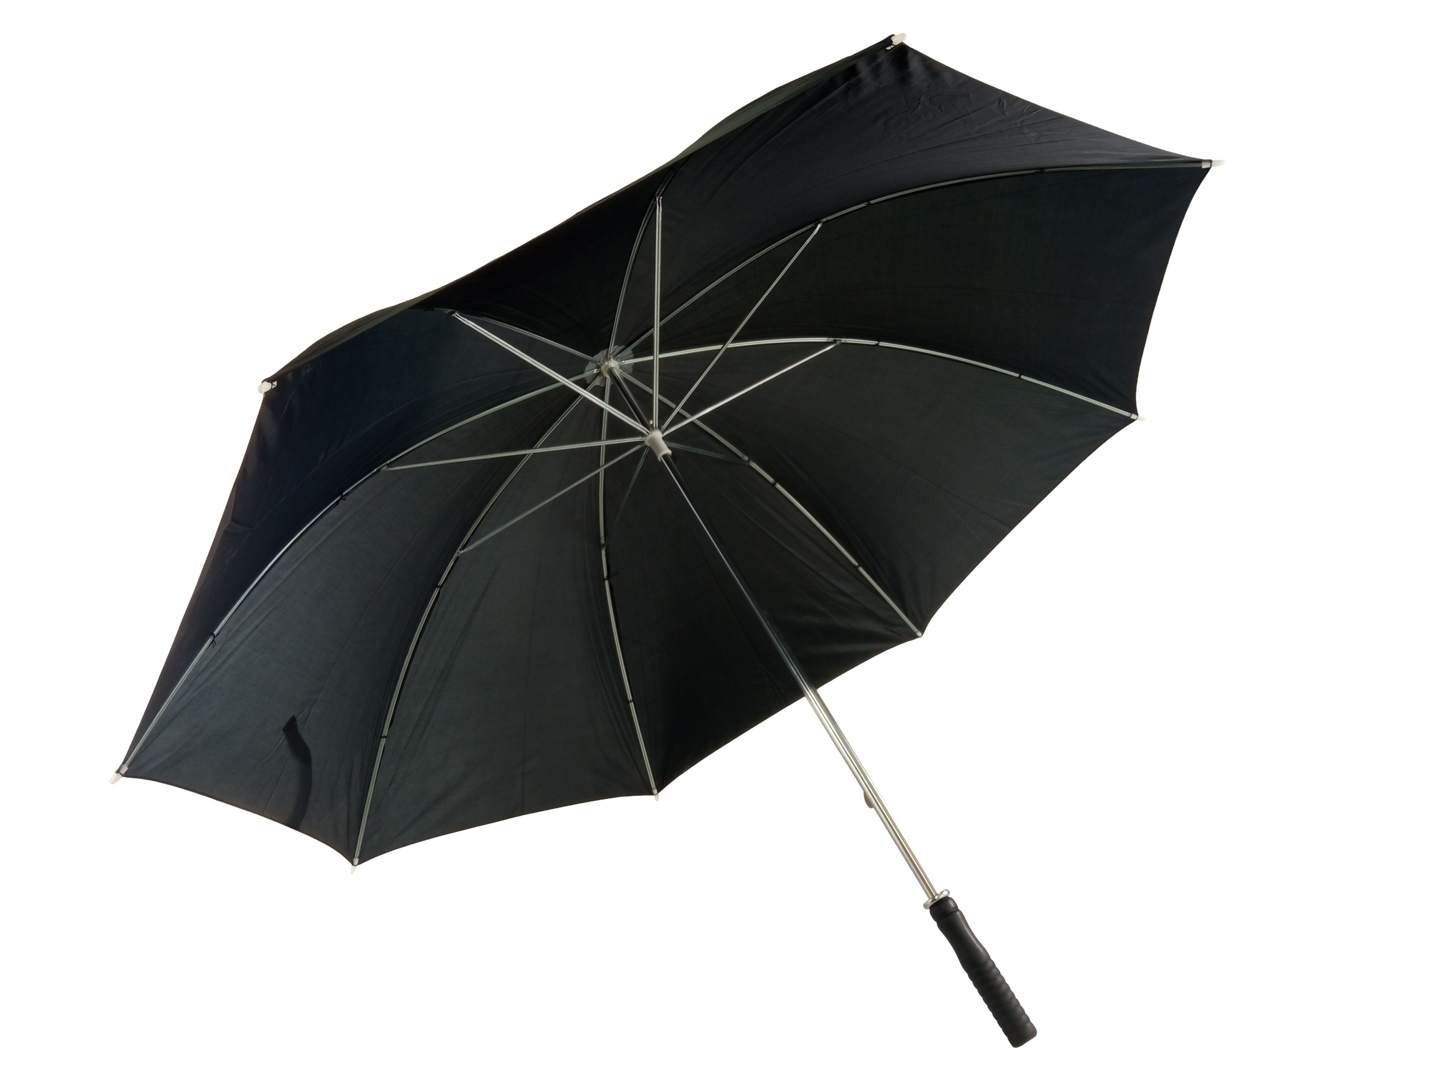 Μαύρη ομπρέλα βροχής, συνοδείας, με 8 διπλές ακτίνες.